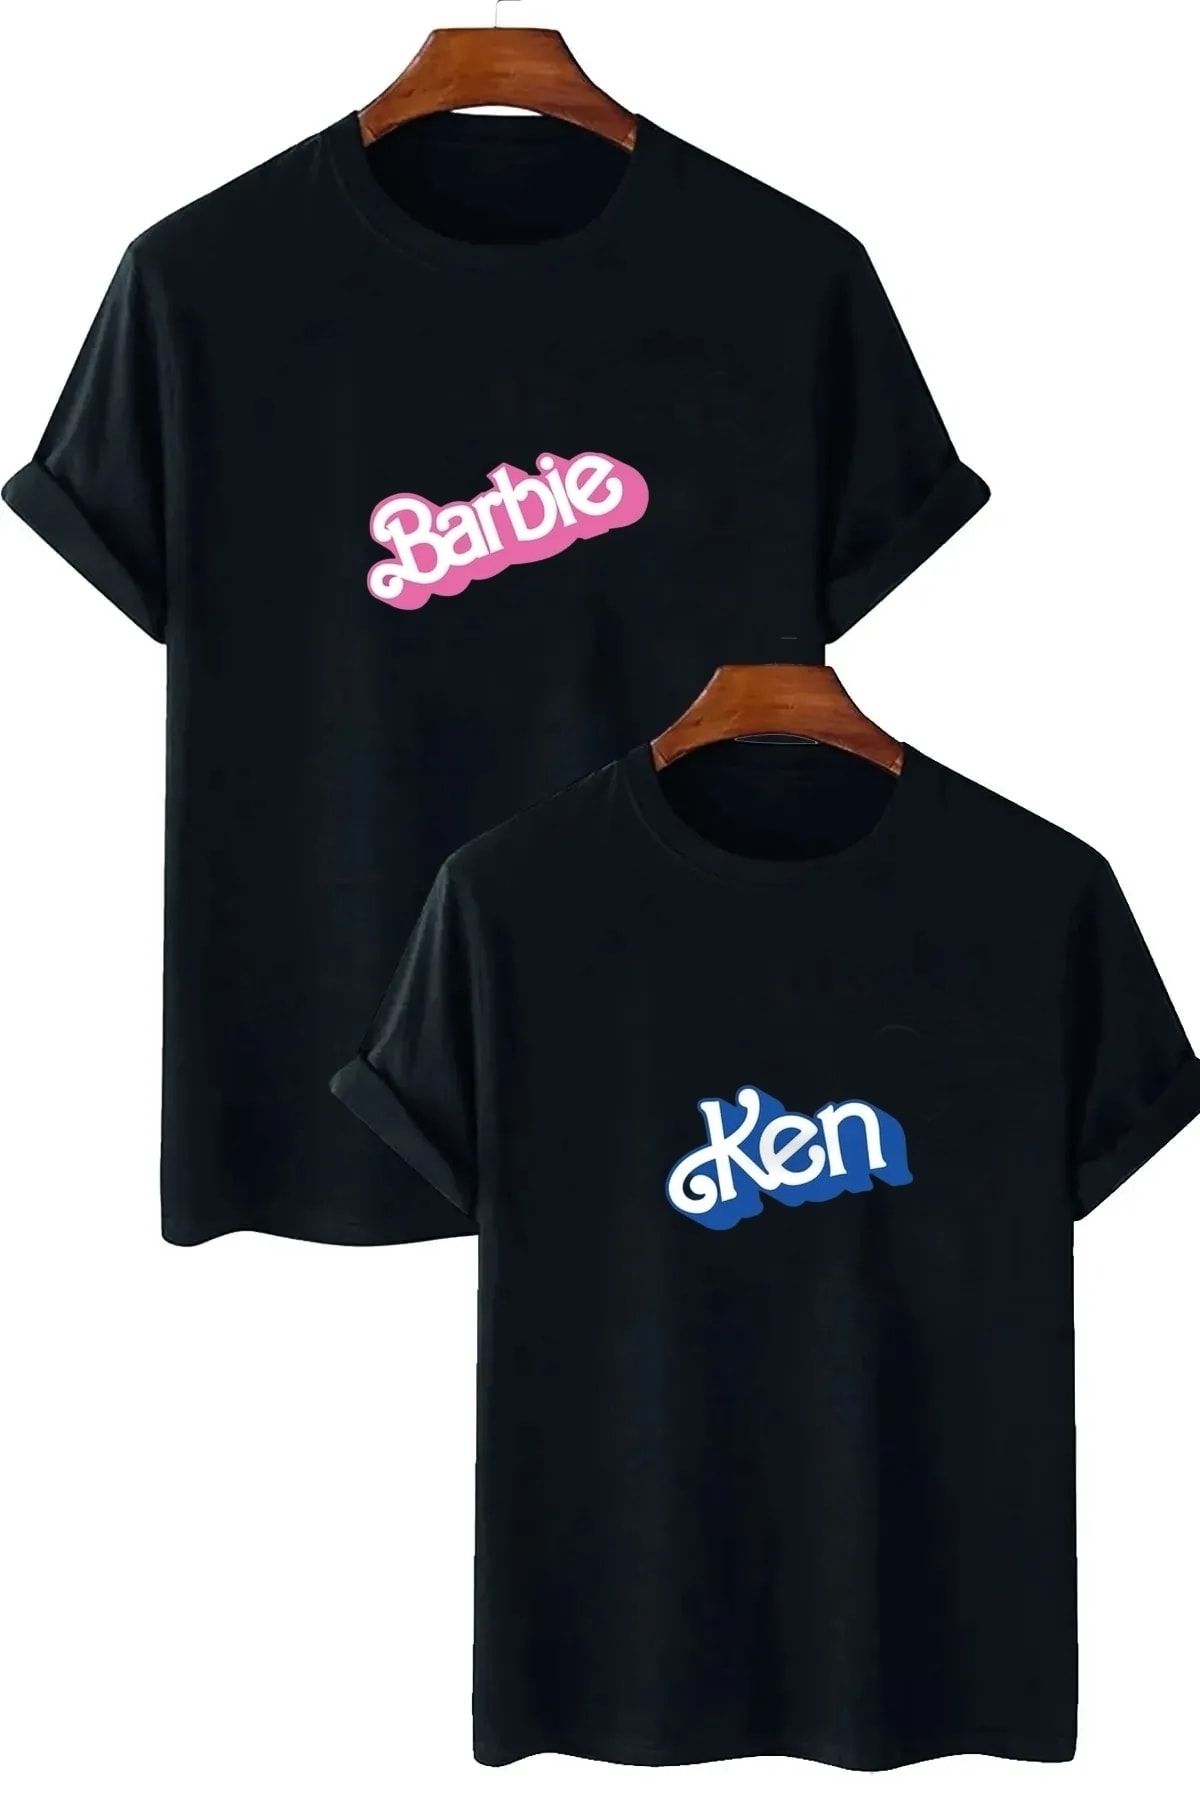 EgeModa Oversize Barbie & Ken Baskılı Sevgili Kombini T-shirt (2 Ürün)